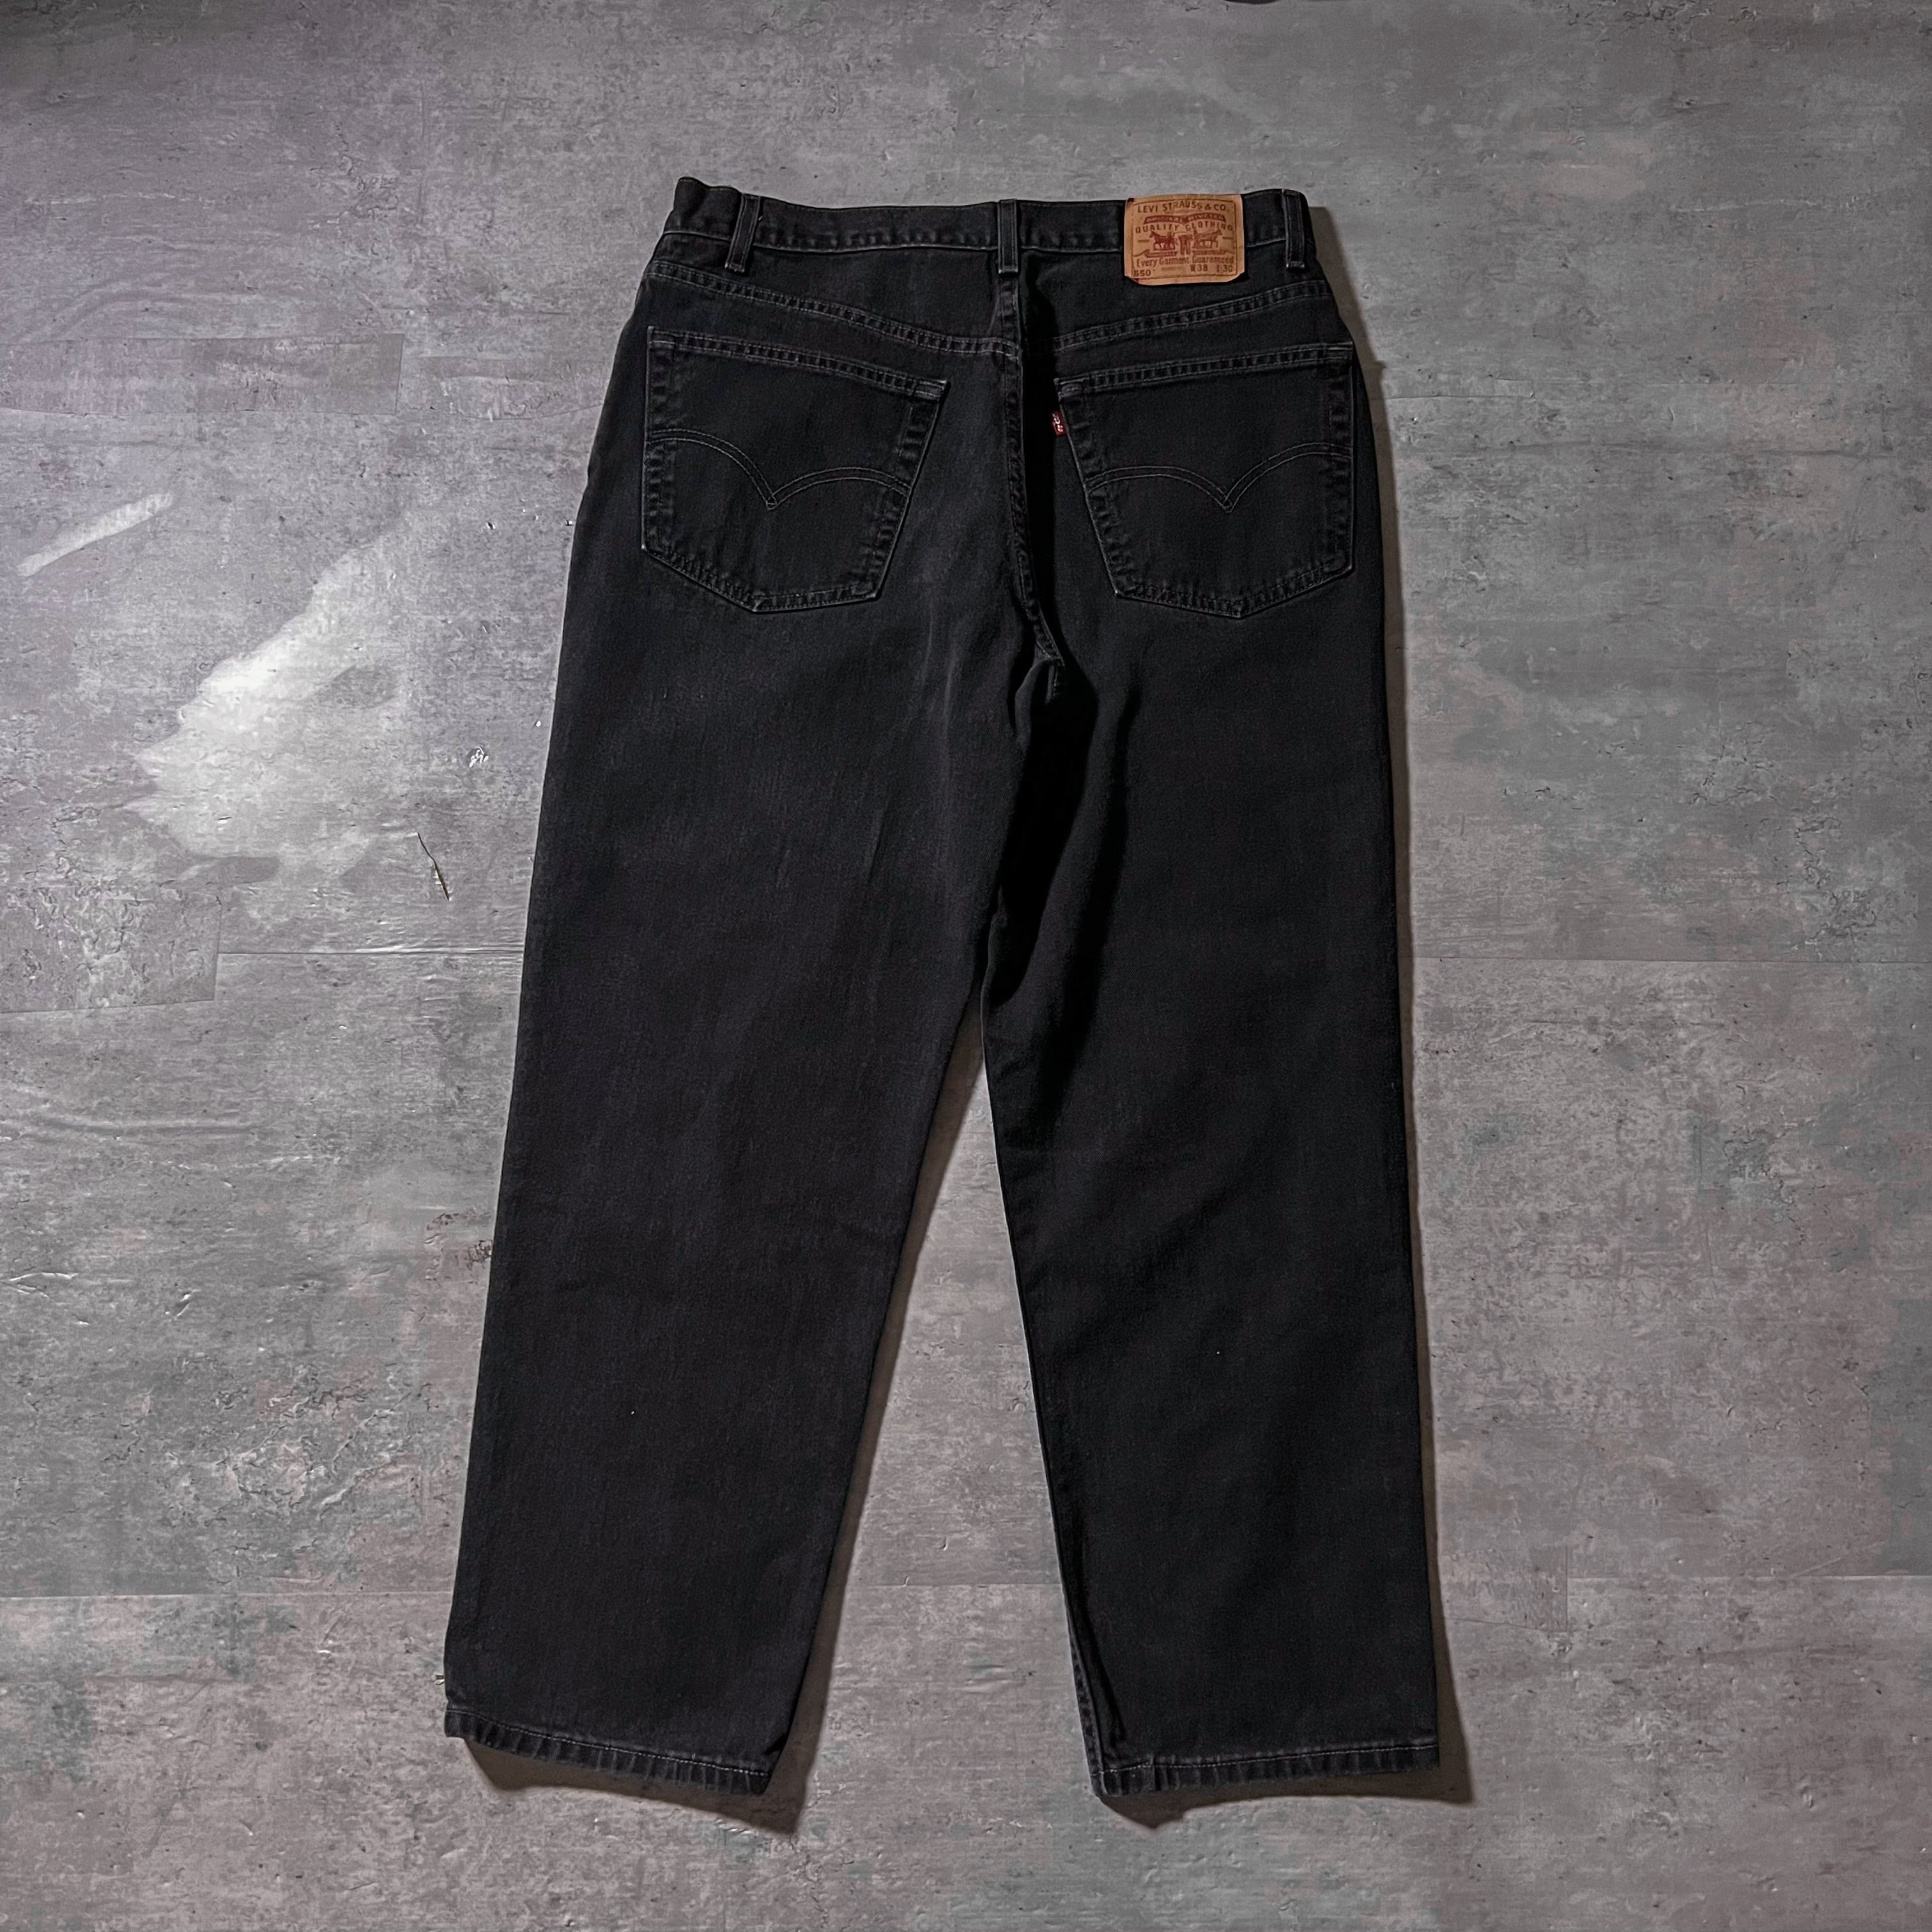 00年製 “Levis 550” 後染めblack denim pants W38L30 made in usa 